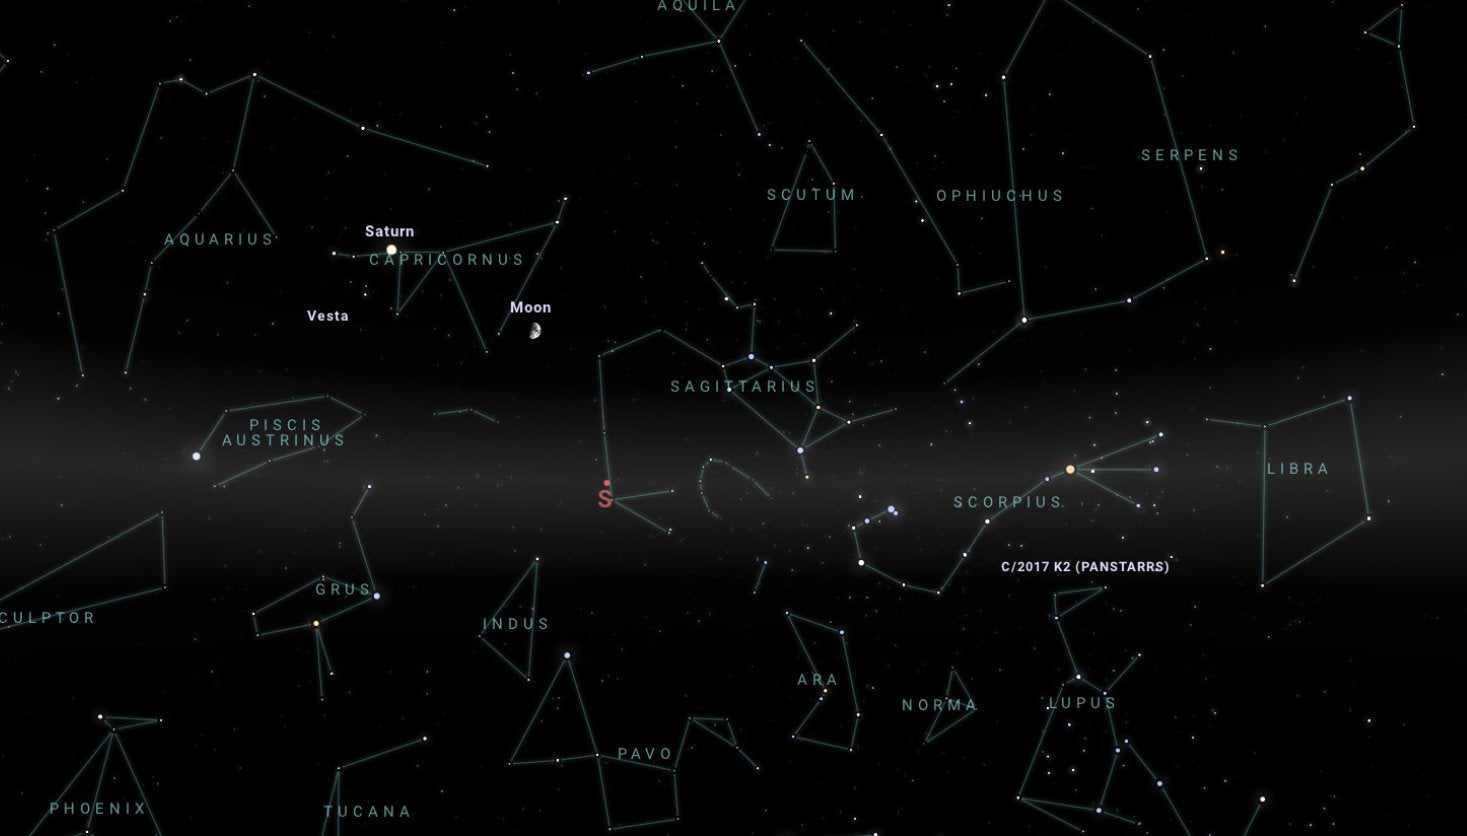 galamaps leto nocni obloha konstelace hvezdna mapa darek